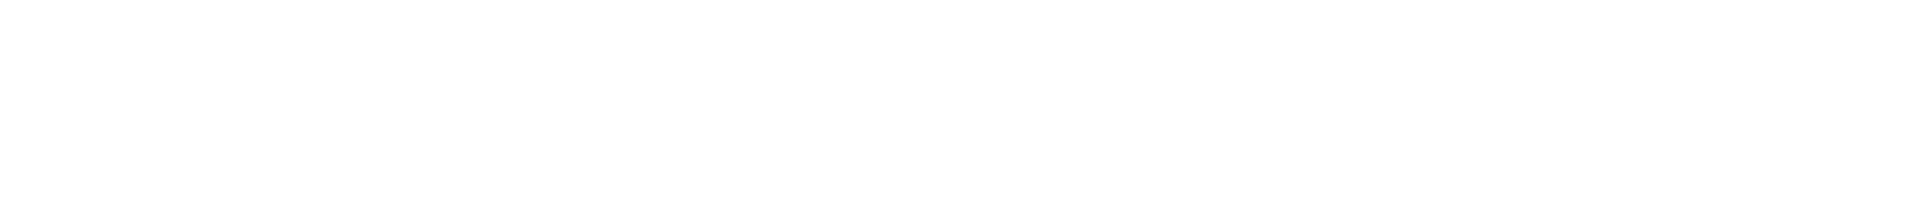 成都三鑫宏业科技有限公司